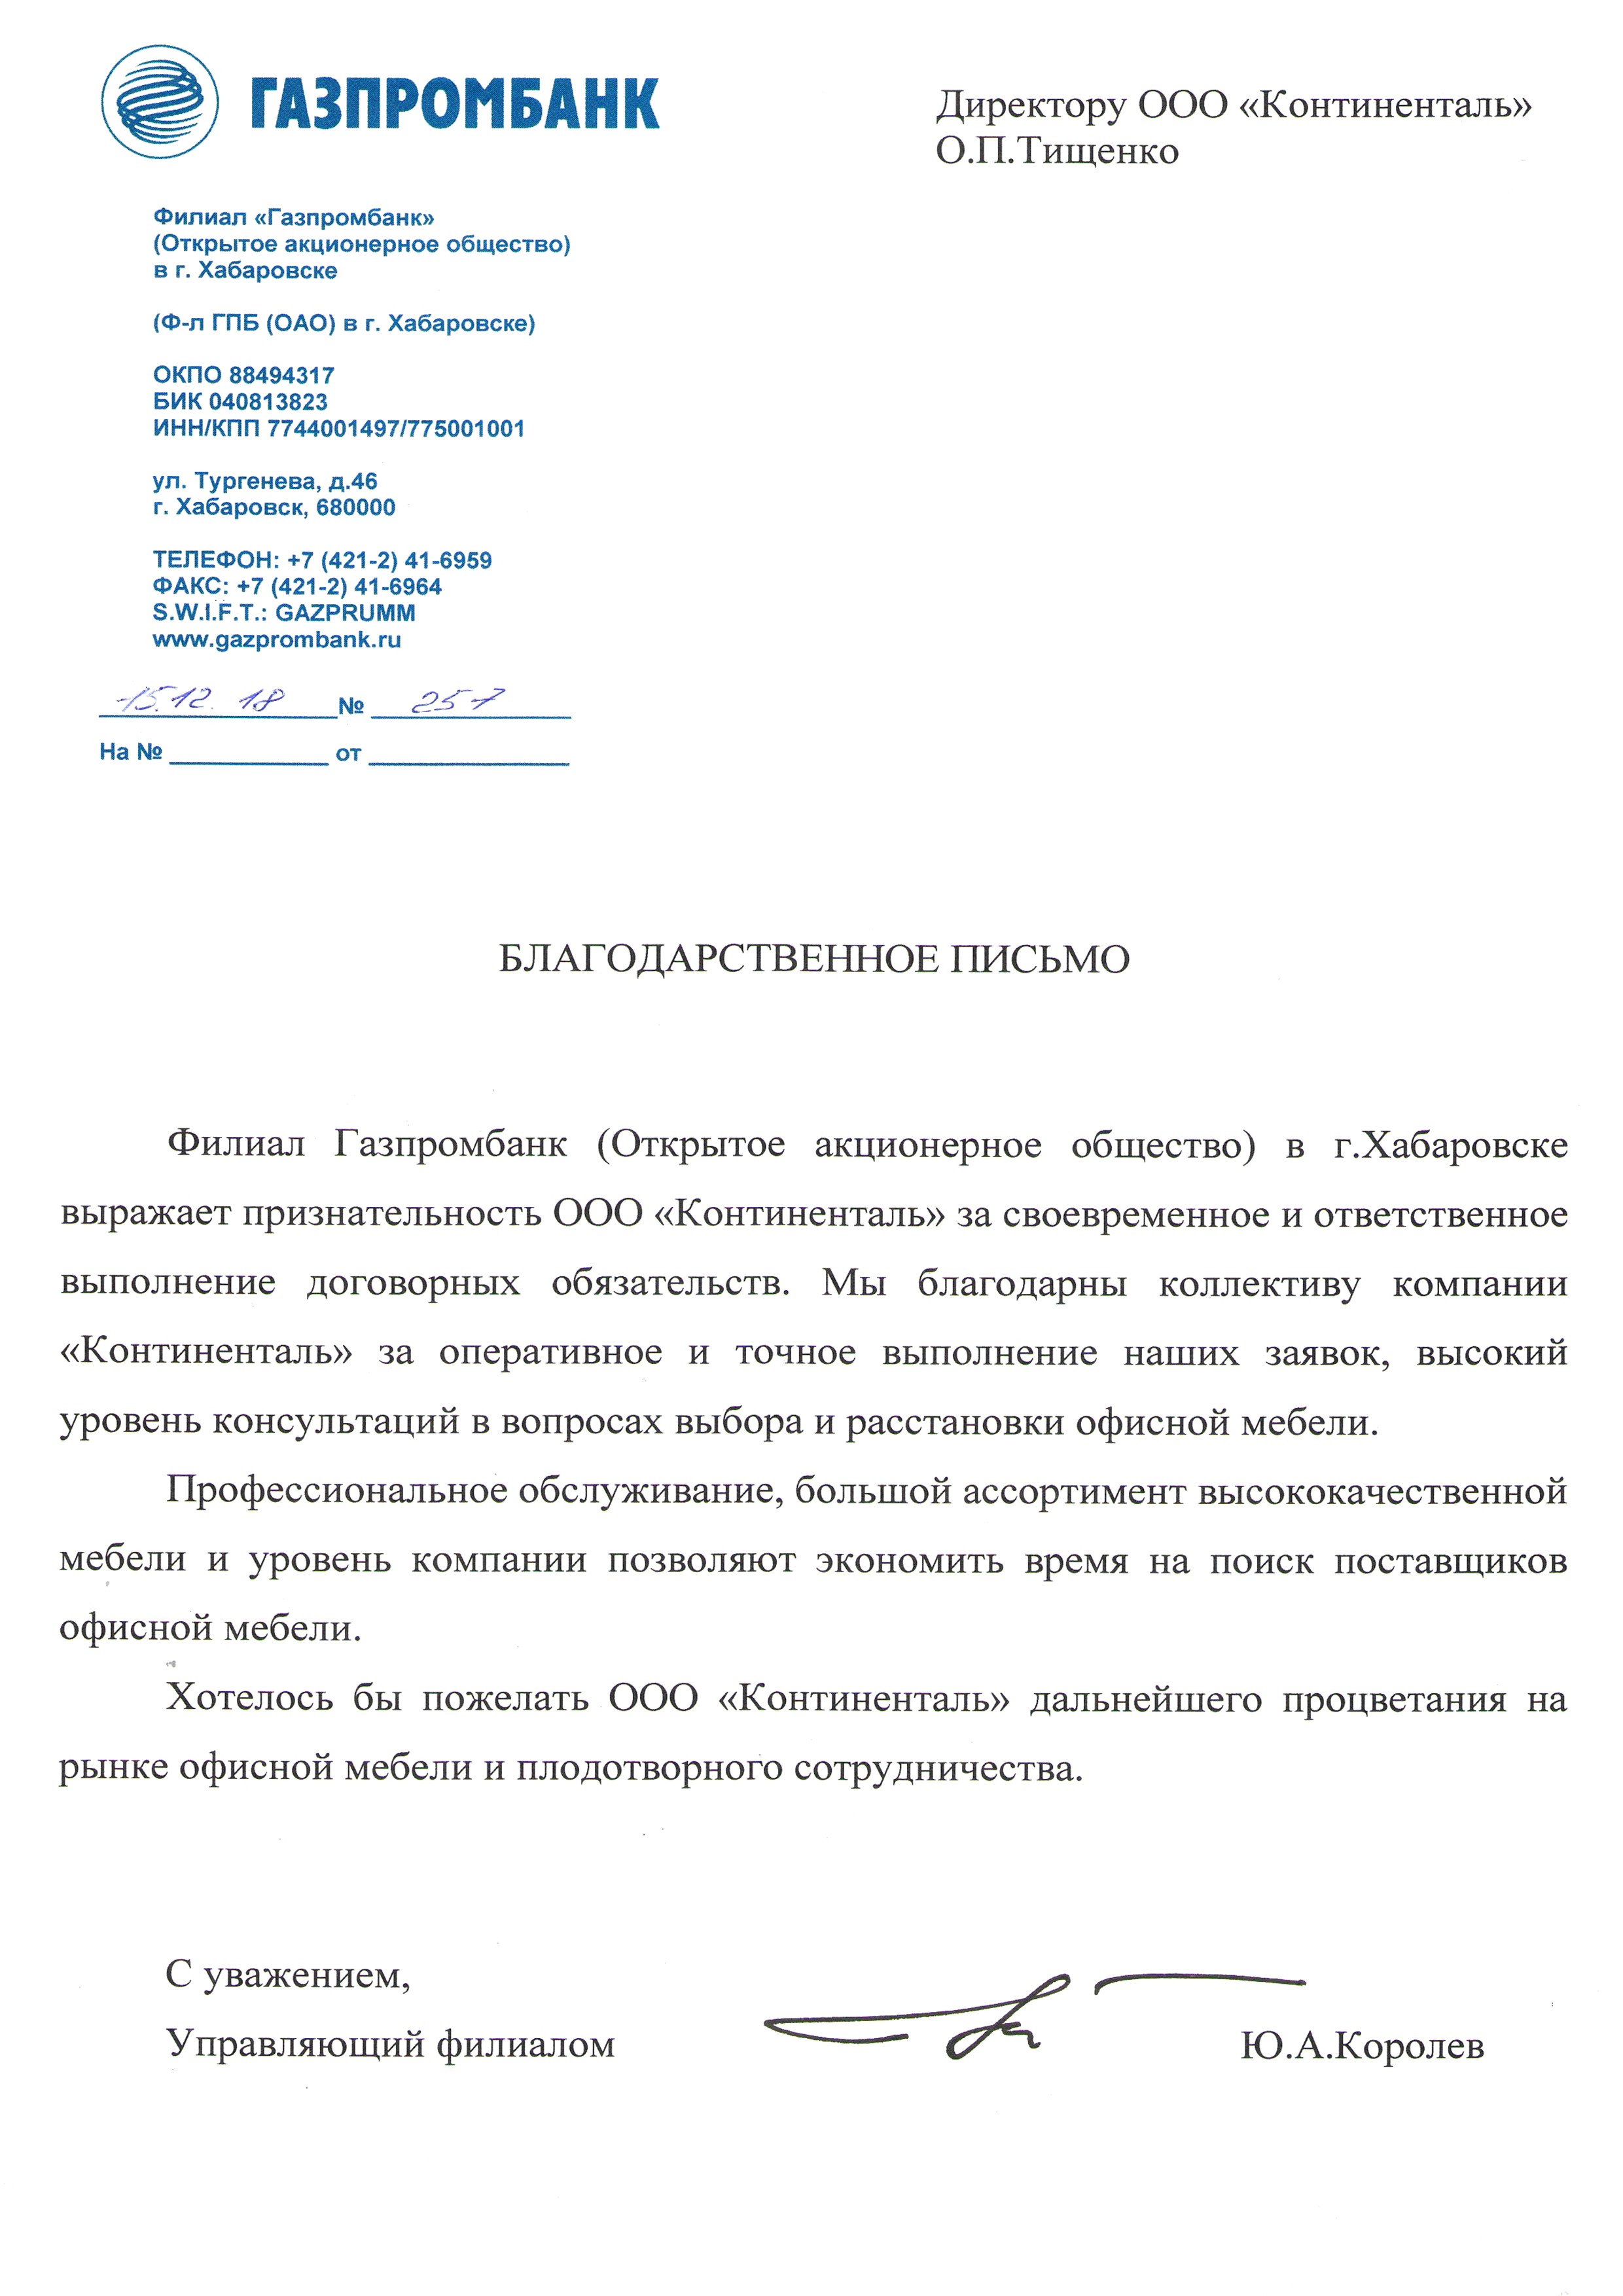 Филиал ОАО "Газпромбанк" в г. Хабаровске выражает благодарность за своевременное и ответственное выполнение договорных обязательств